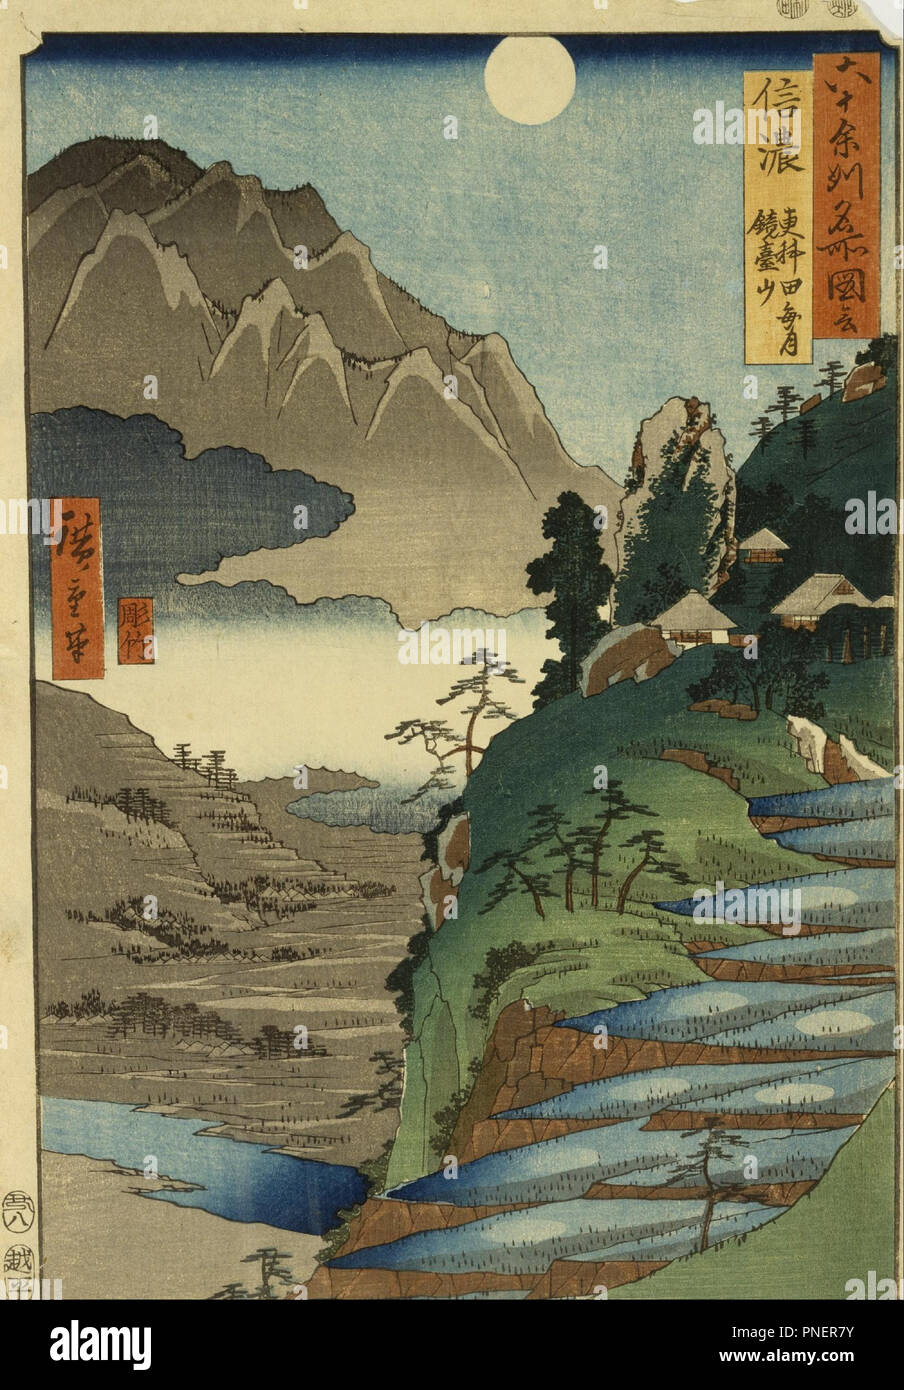 Mt. Kyodai et la Lune reflétée dans les champs de riz à Sarashina dans la province de Shinano, no 25. Date/Période : 1853/1858. Gravure sur bois. Largeur : 24,1 cm. Hauteur : 34,8 cm (feuille). Auteur : Ando Hiroshige. Banque D'Images